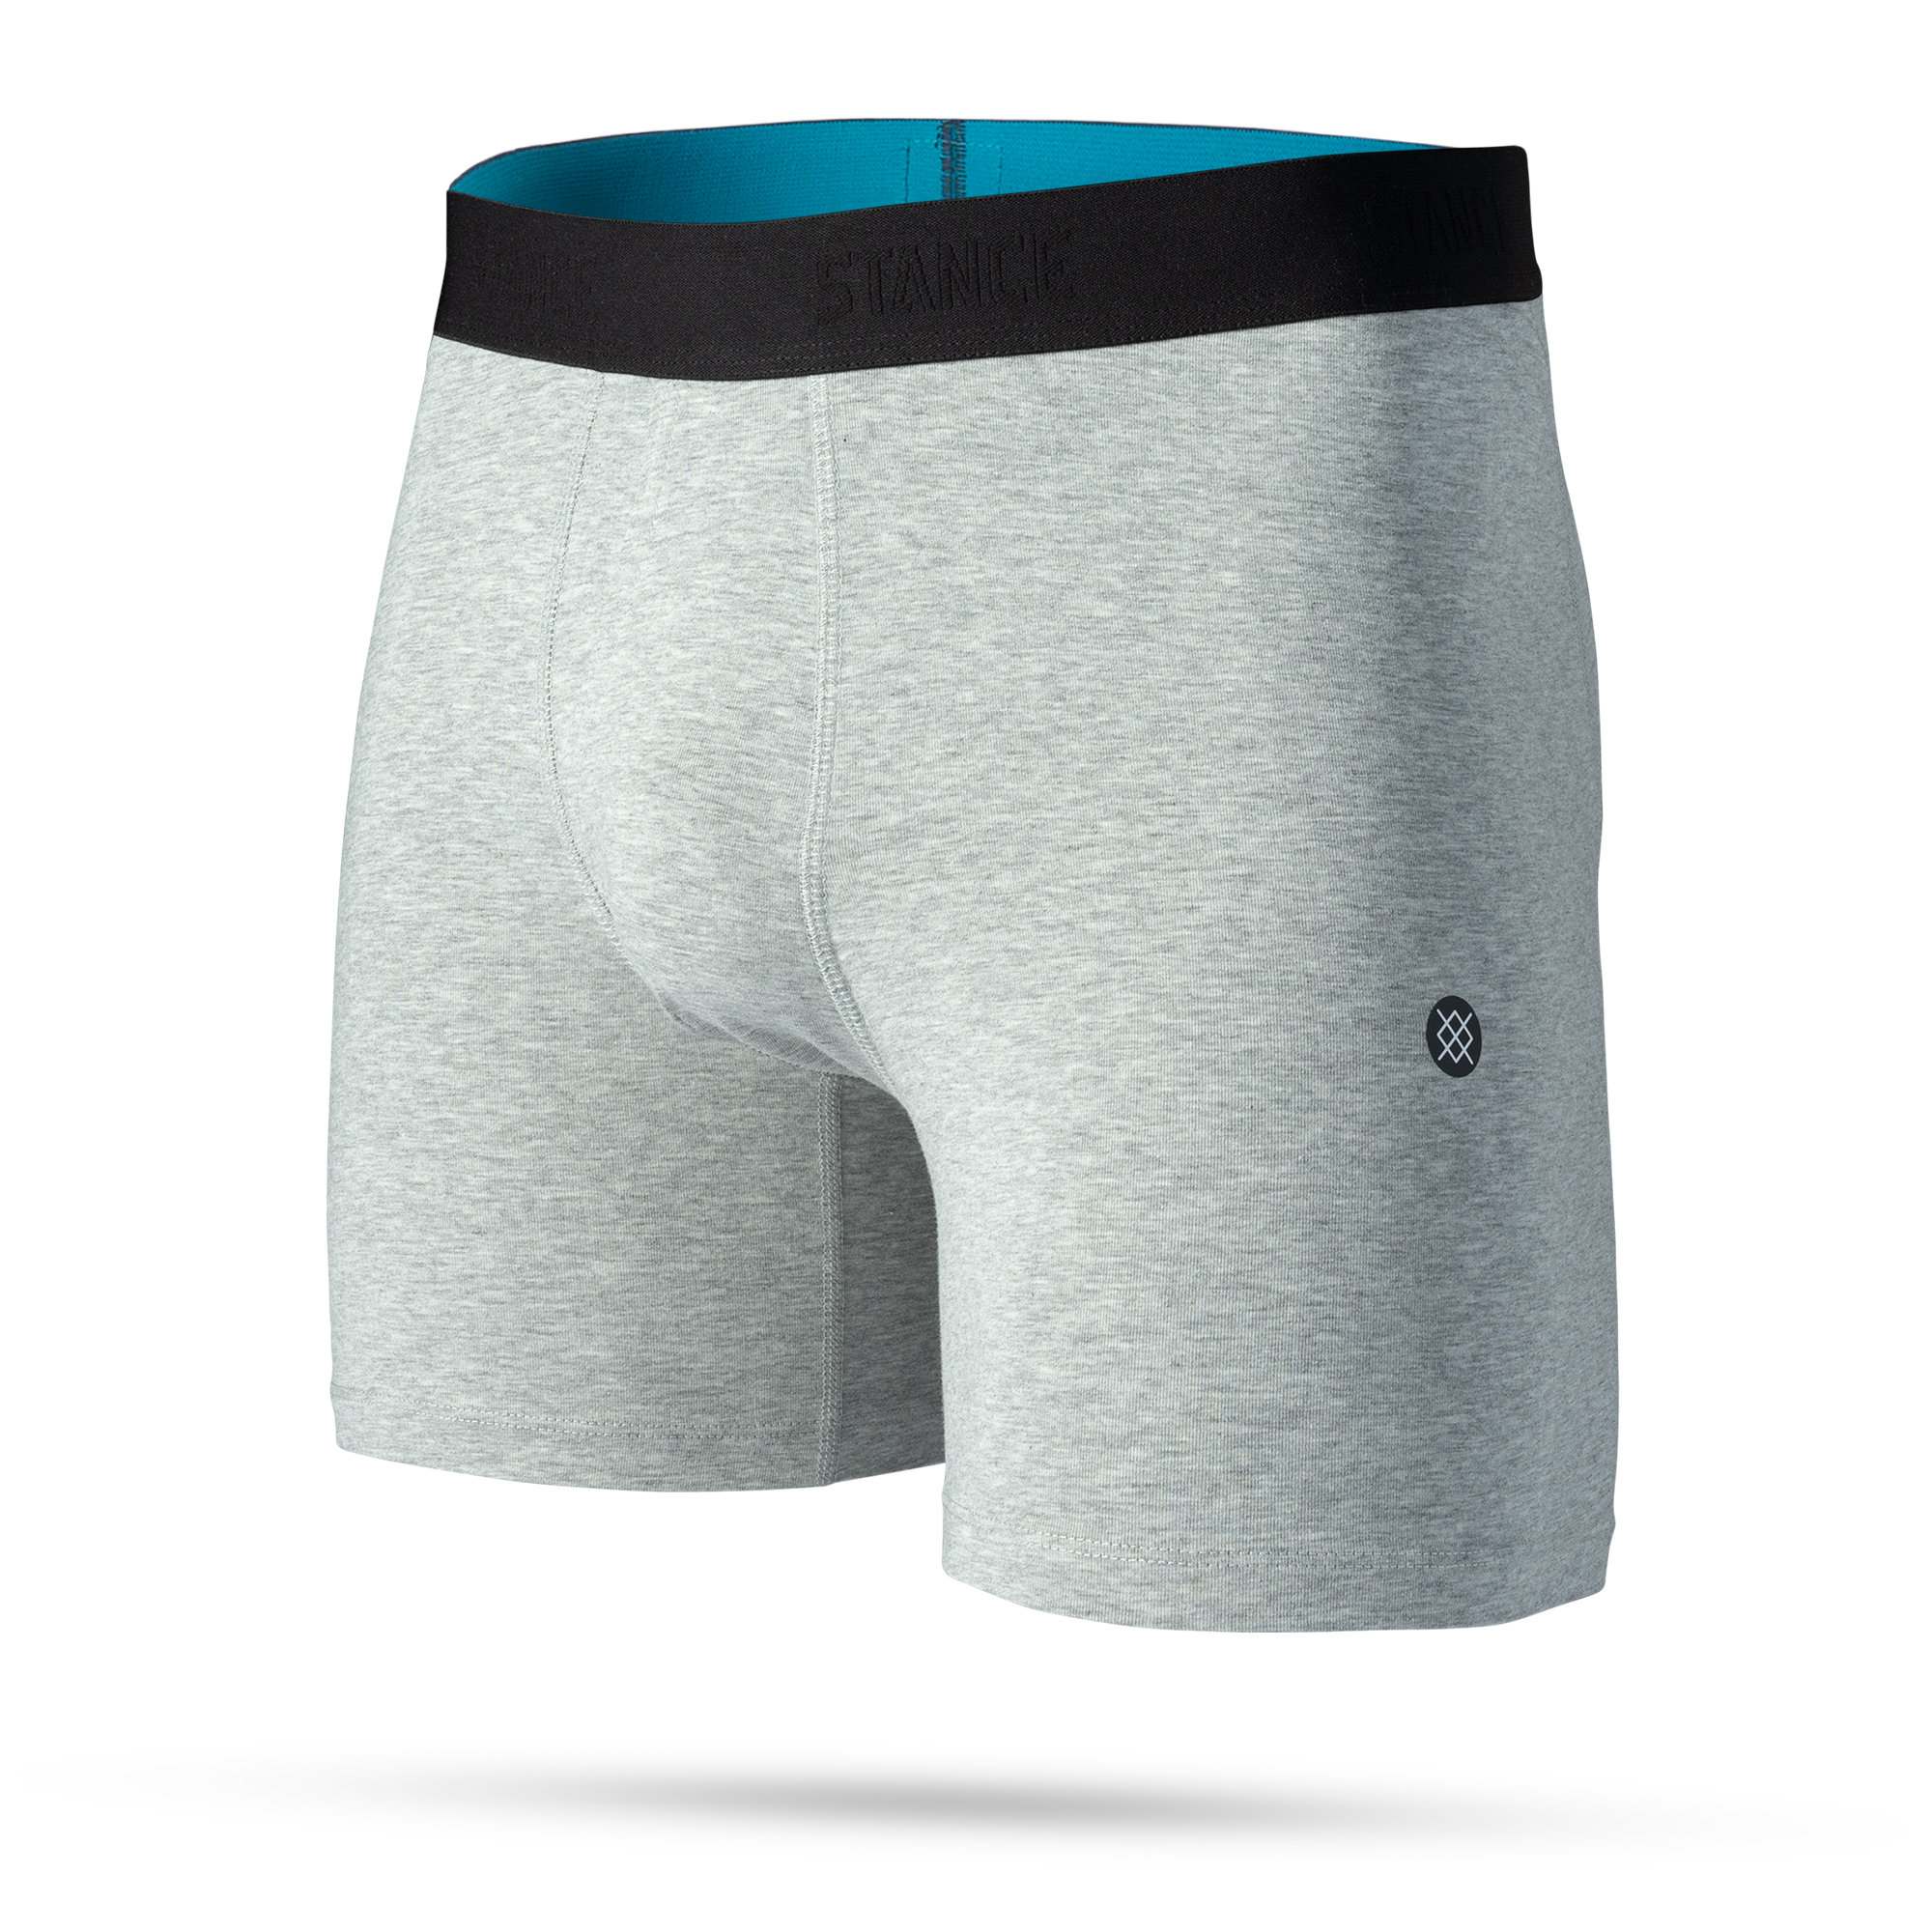 OG Staple 6 Inch Wholester™ Underwear